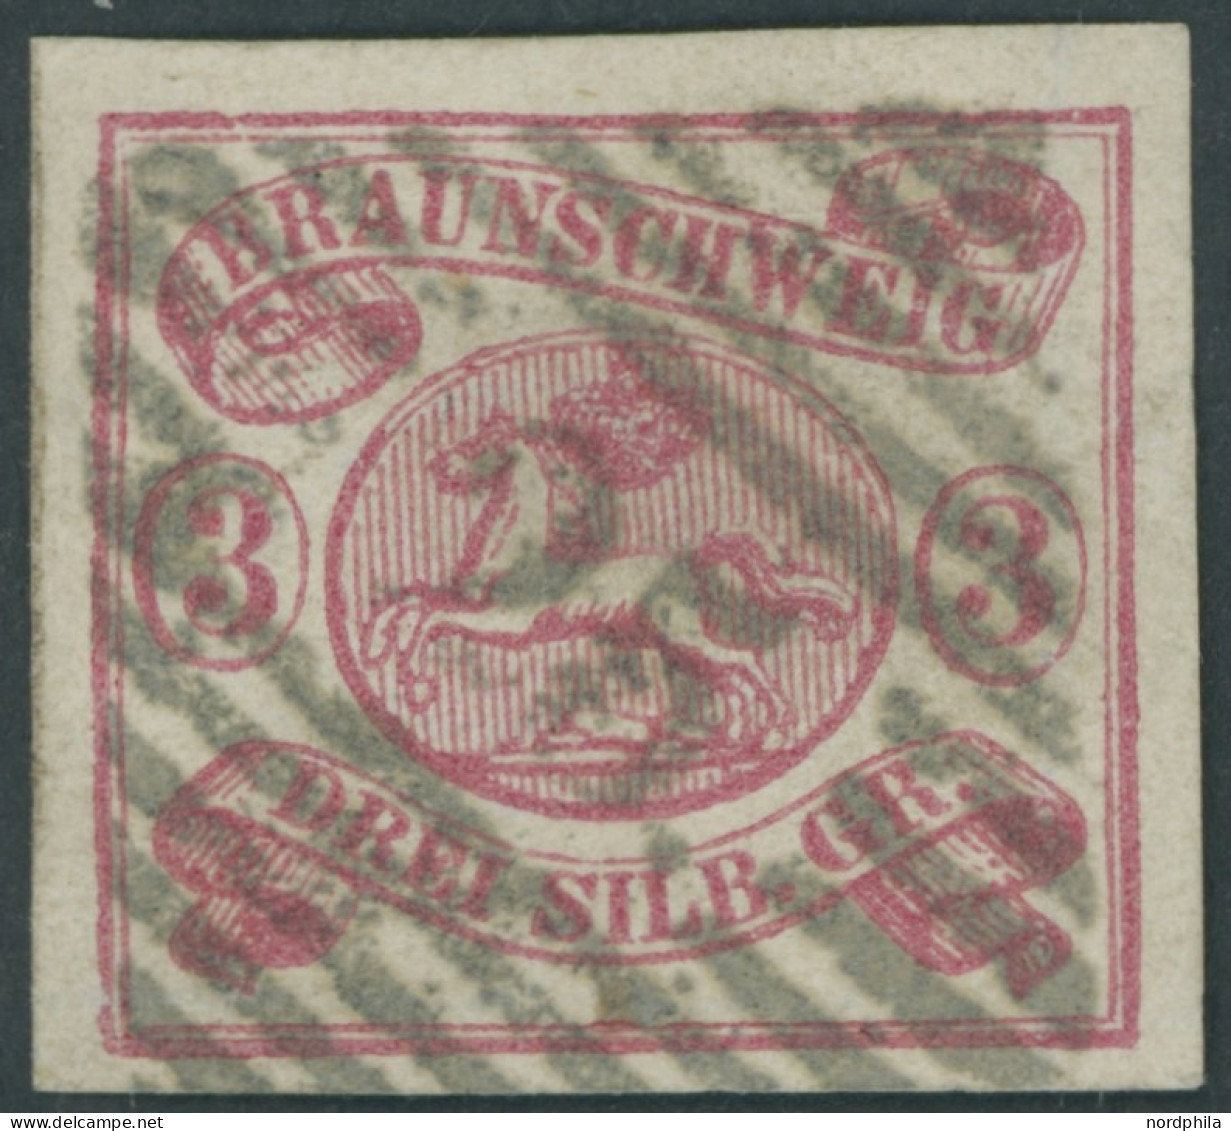 BRAUNSCHWEIG 12Aa O, 1862, 3 Sgr. Rosa, Zentrischer Nummernstempel 25 (JERXHEIM), Kabinett, Gepr. Brettl - Brunswick